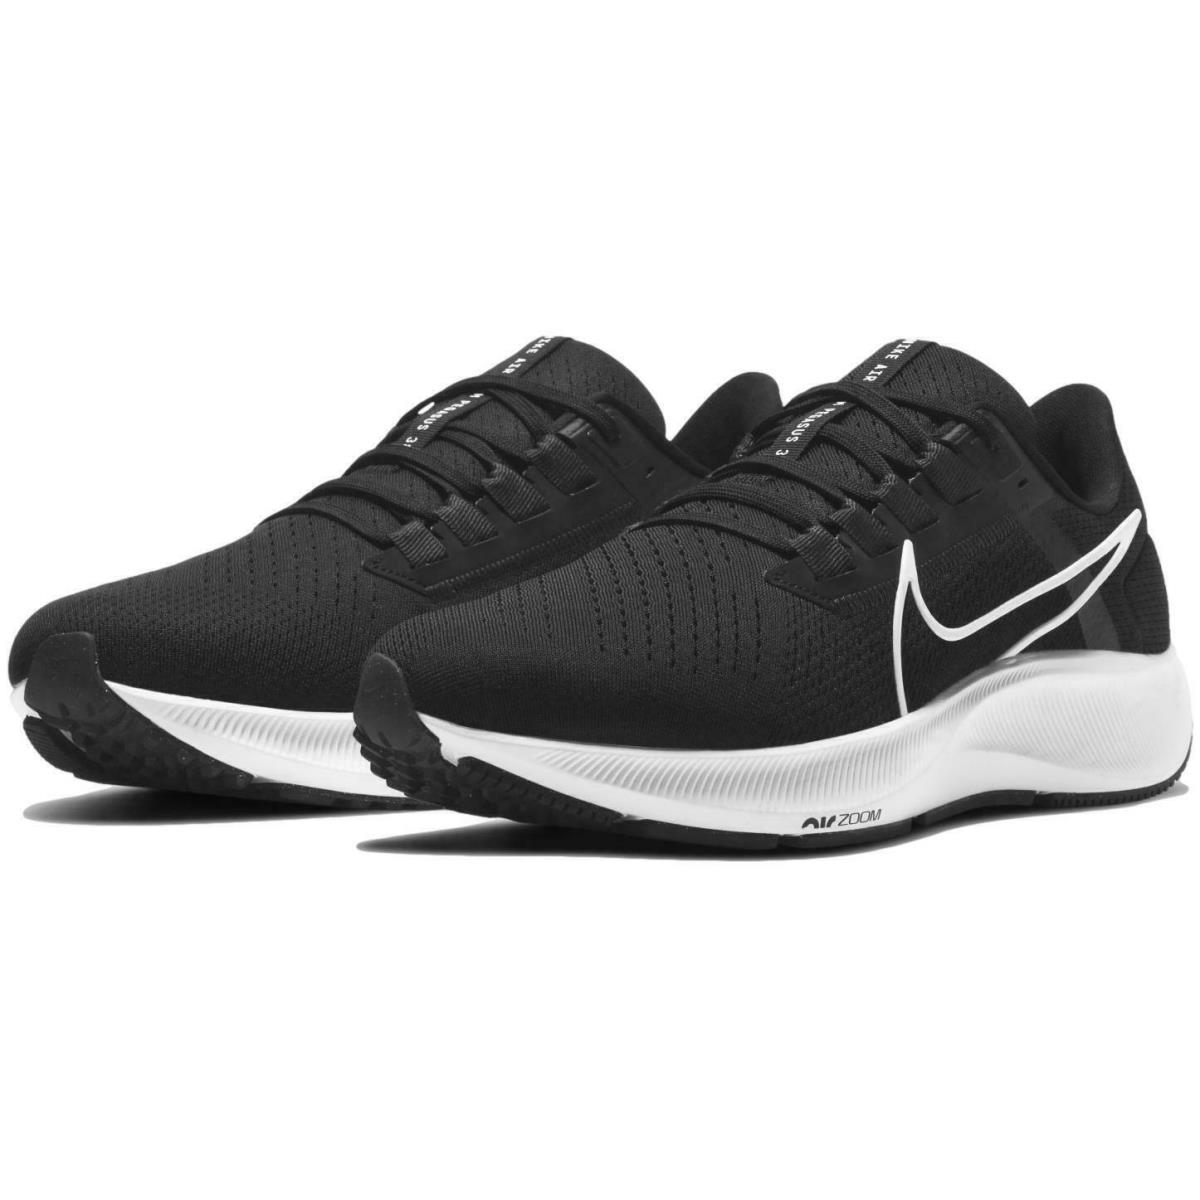 Nike Air Zoom Pegasus 38 tb Men`s Running Shoes Black White cz1893 001 9.5 10 - Black , black white navy Manufacturer